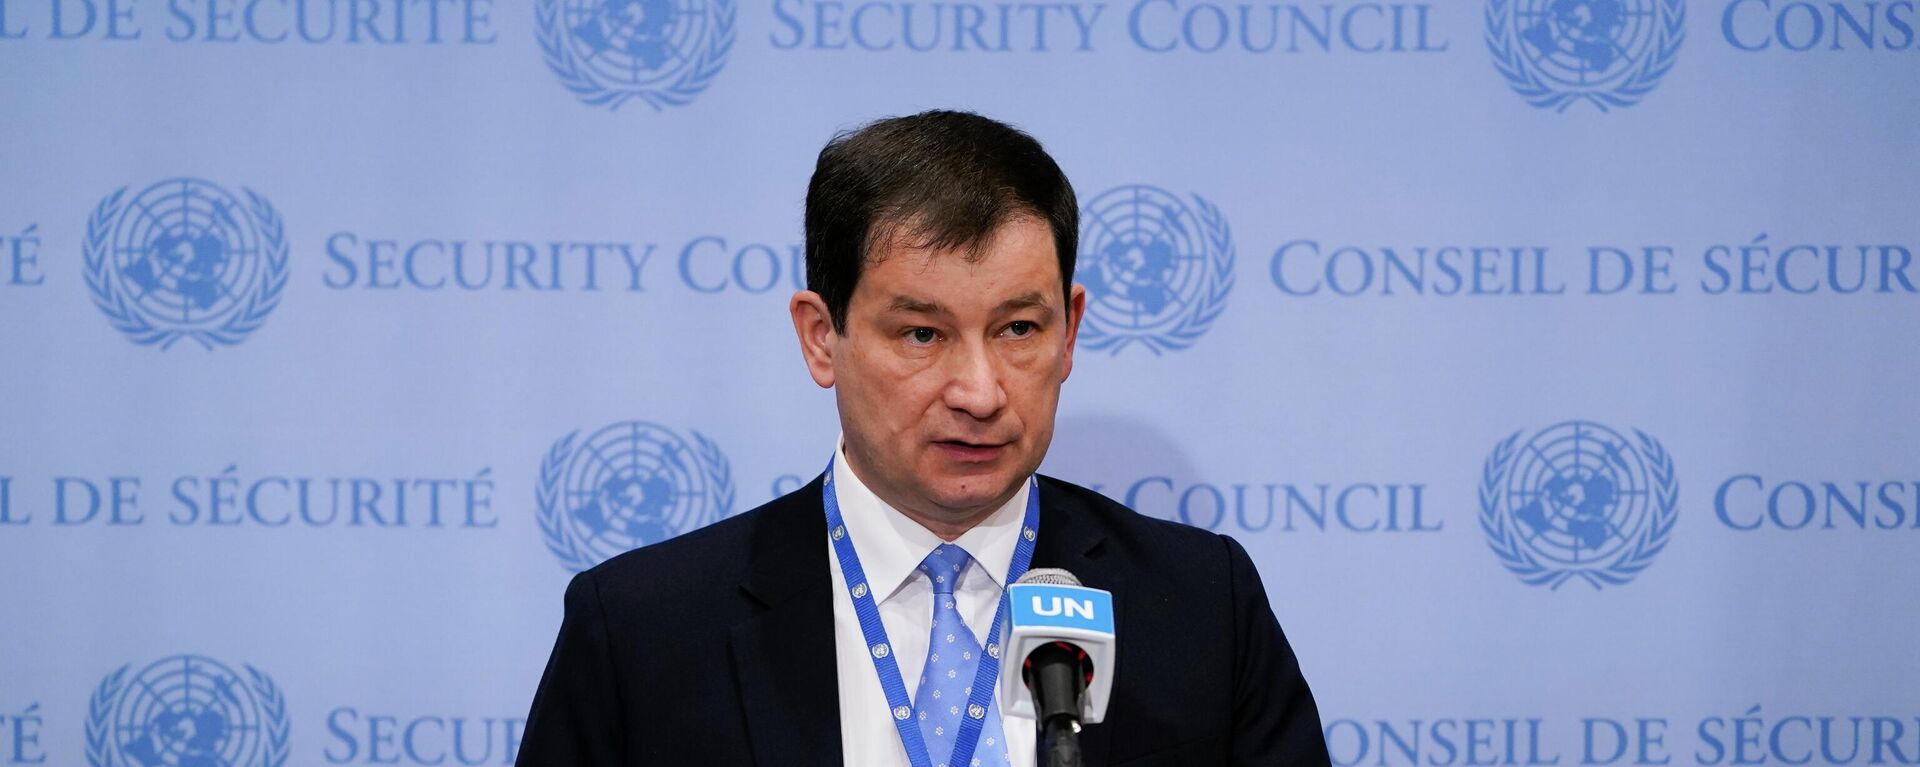 Vice-chanceler russo na Organização das Nações Unidas (ONU), Dmitry Polyanskiy fala a jornalistas na organização, em 19 de abril de 2022 - Sputnik Brasil, 1920, 06.08.2022